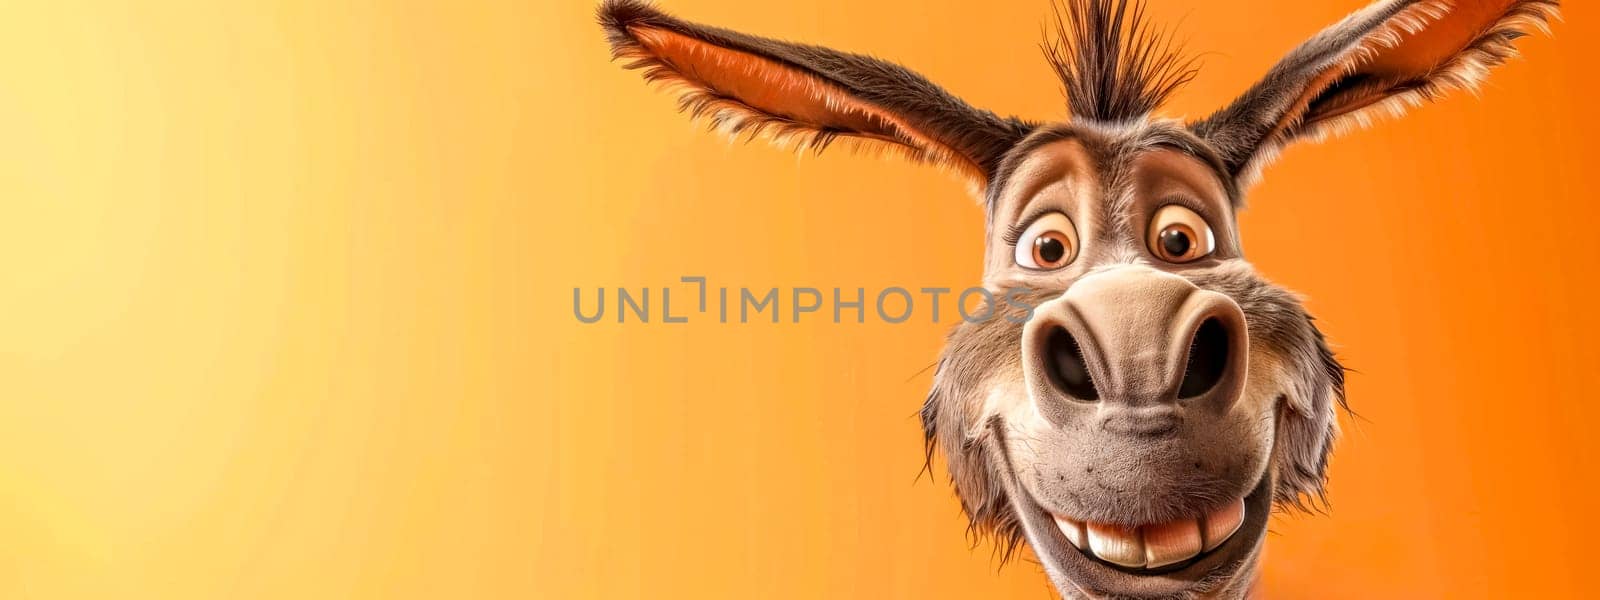 Cheerful cartoon donkey on orange background by Edophoto